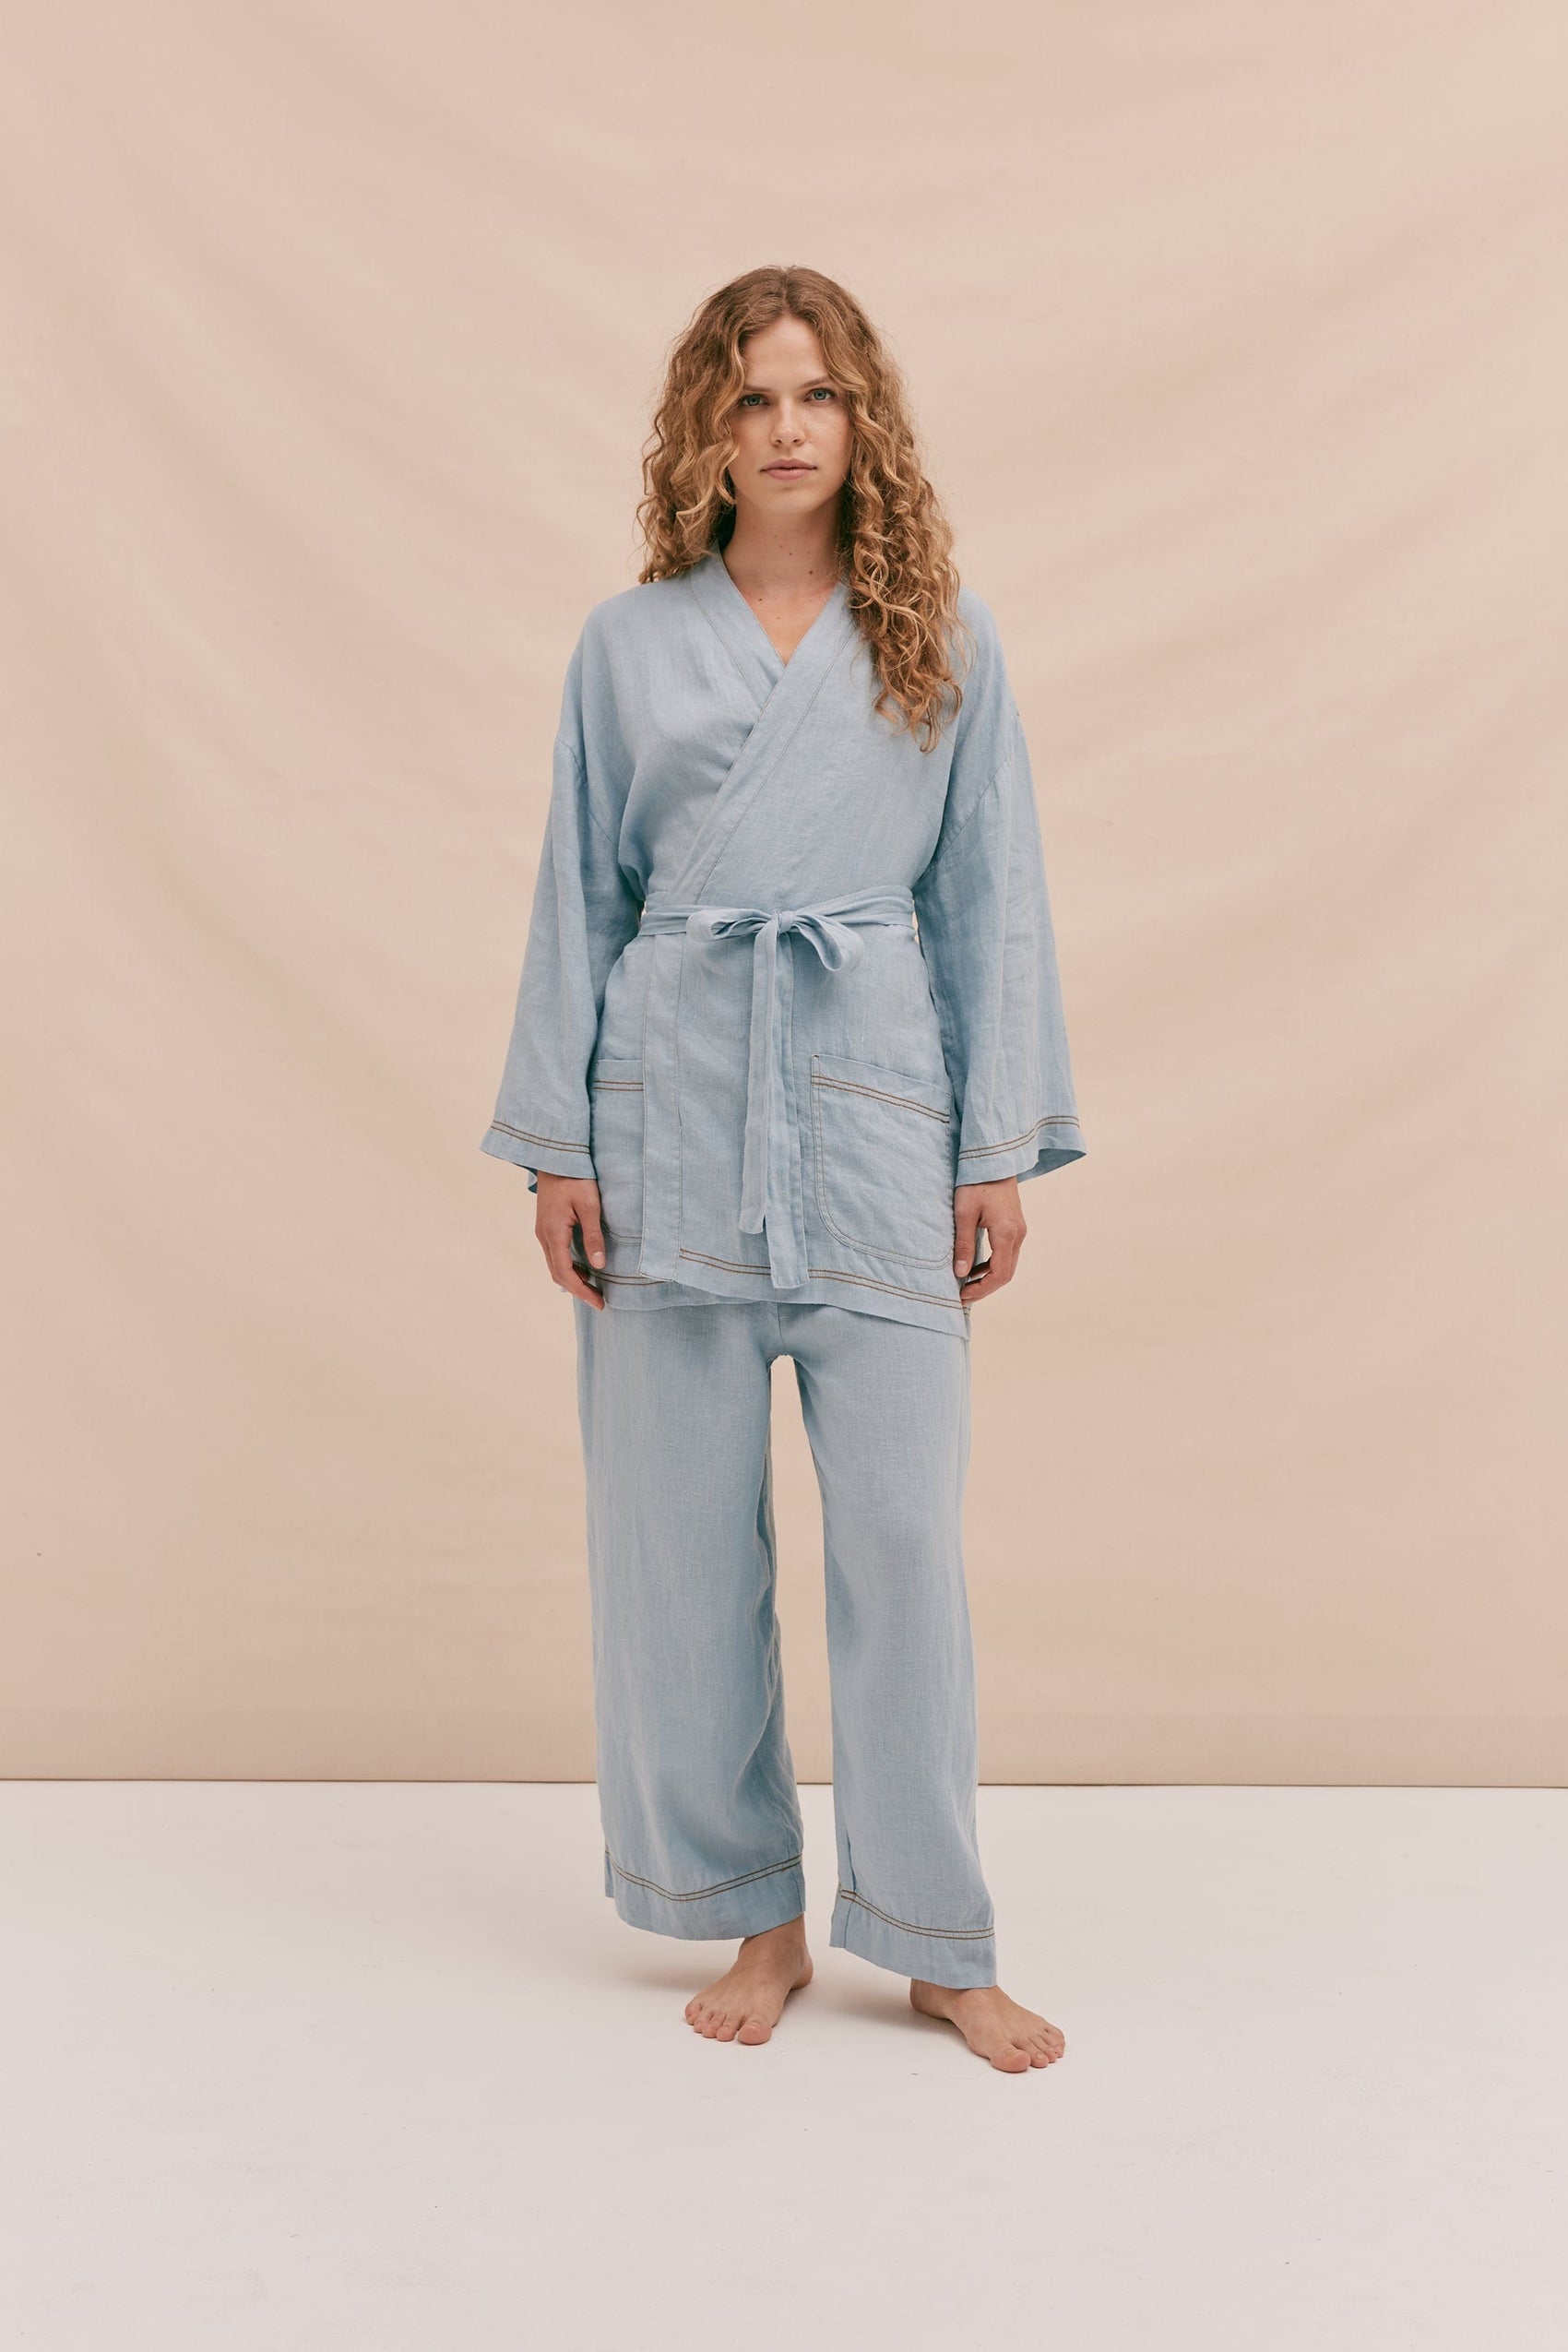 New Pyjamas | New PJs – Desmond & Dempsey